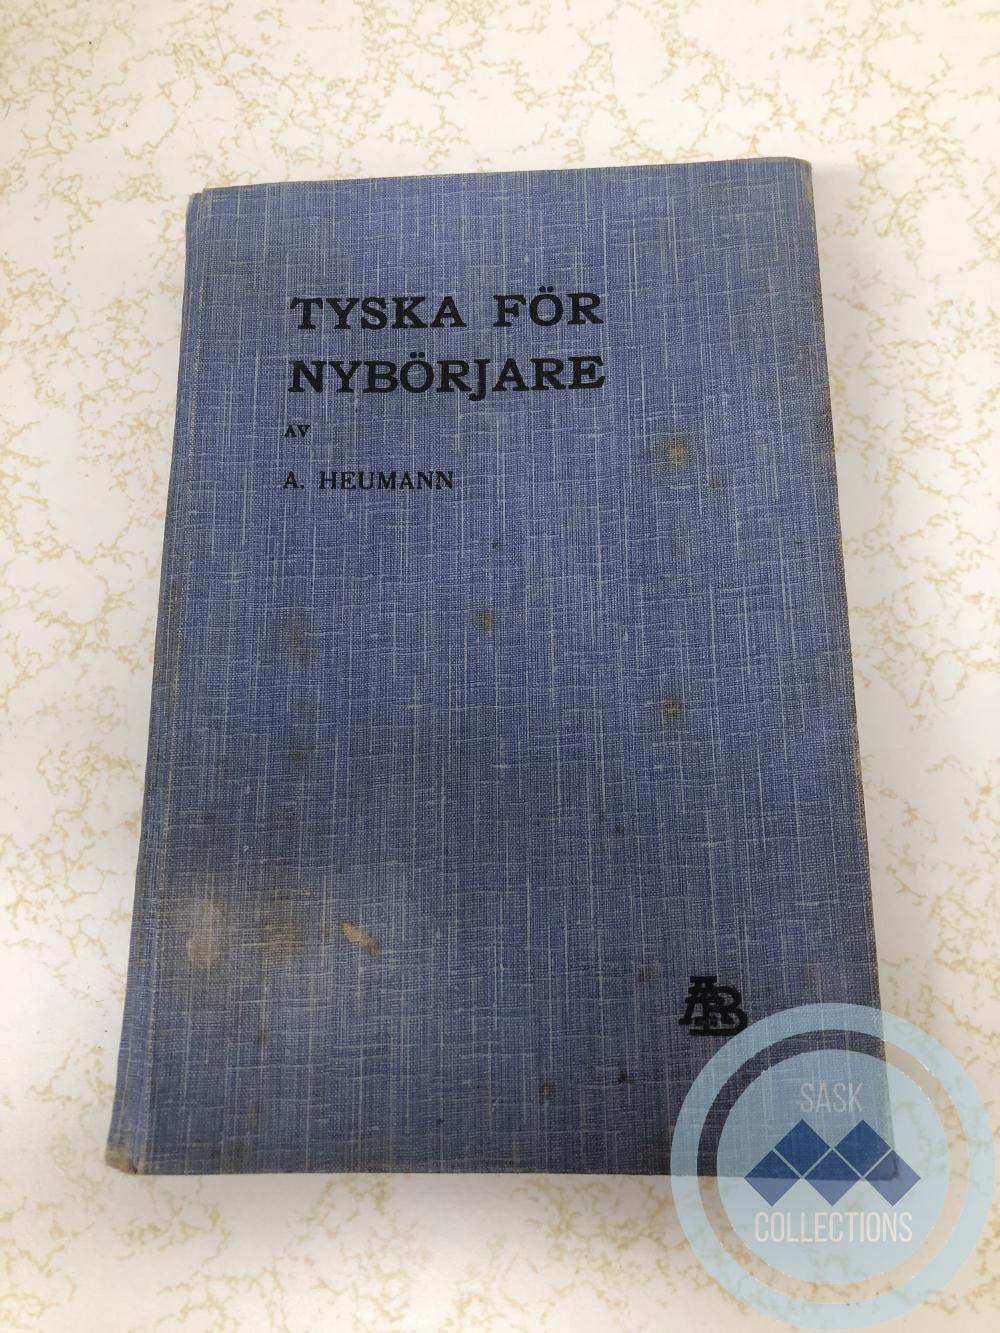 Tyska For Nyborjare (Swedish)